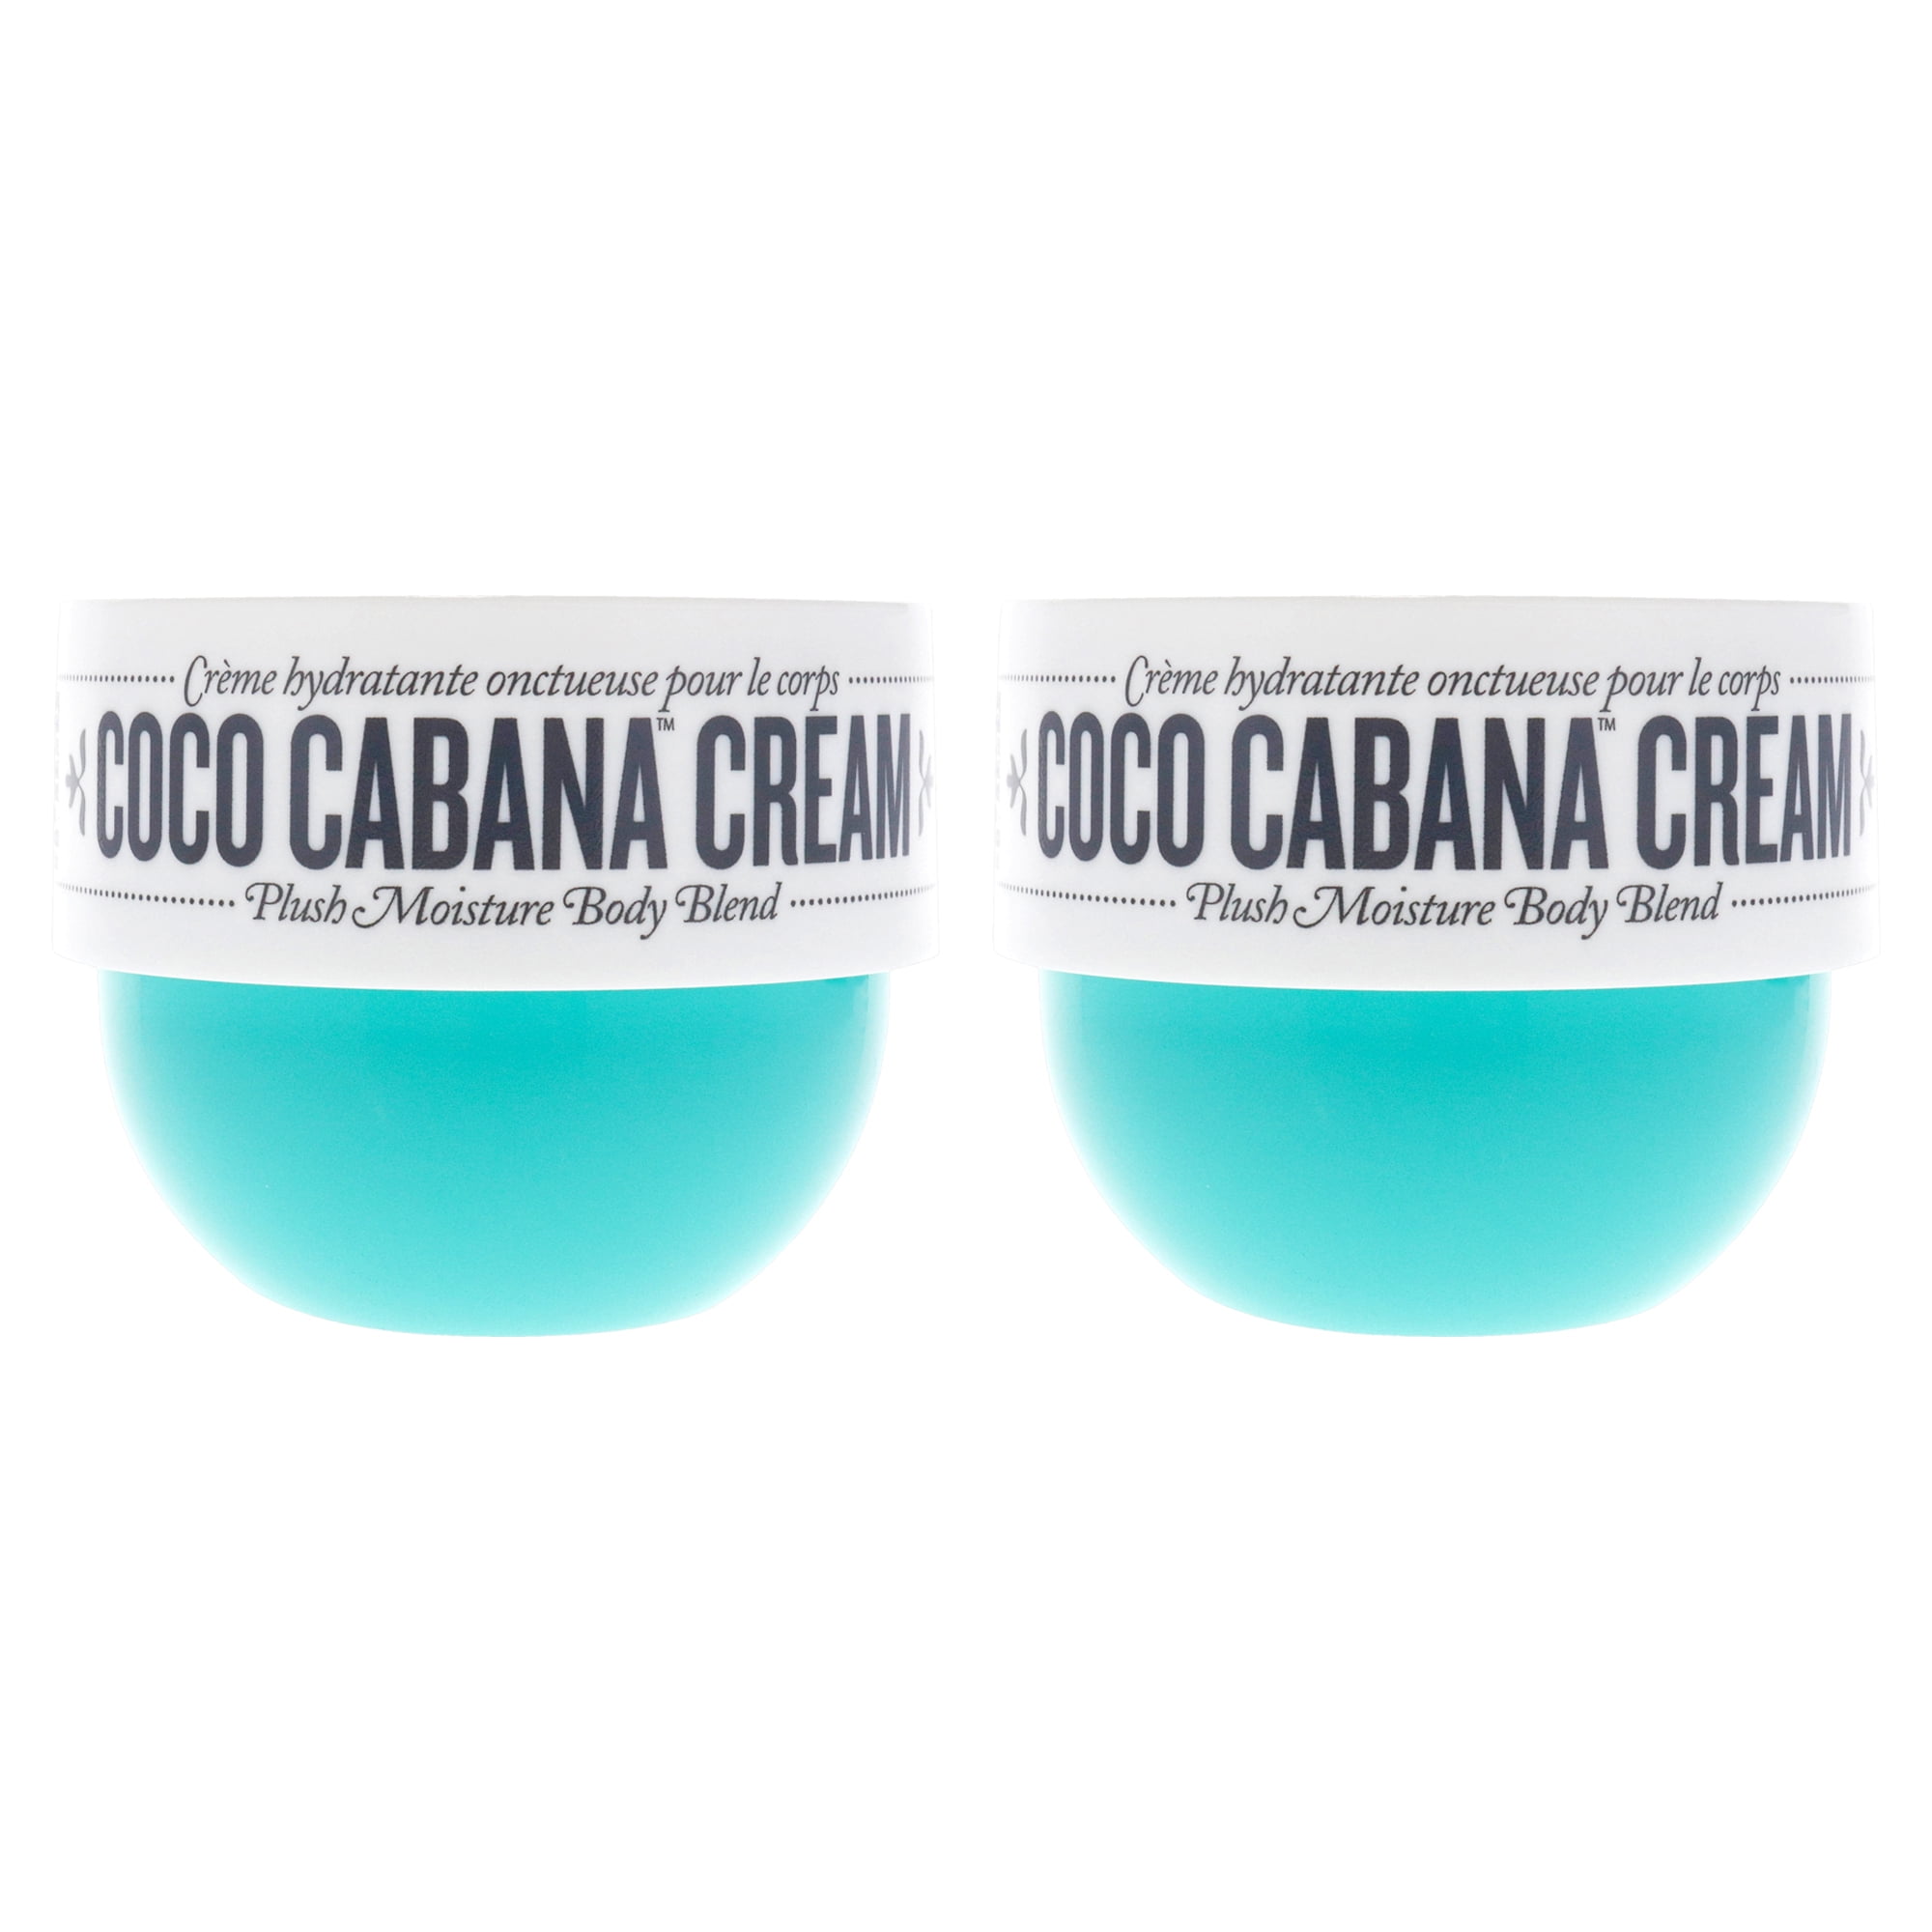 Sol de Janeiro Coco Cabana Cream - Pack of 2 , 2.5 oz Cream